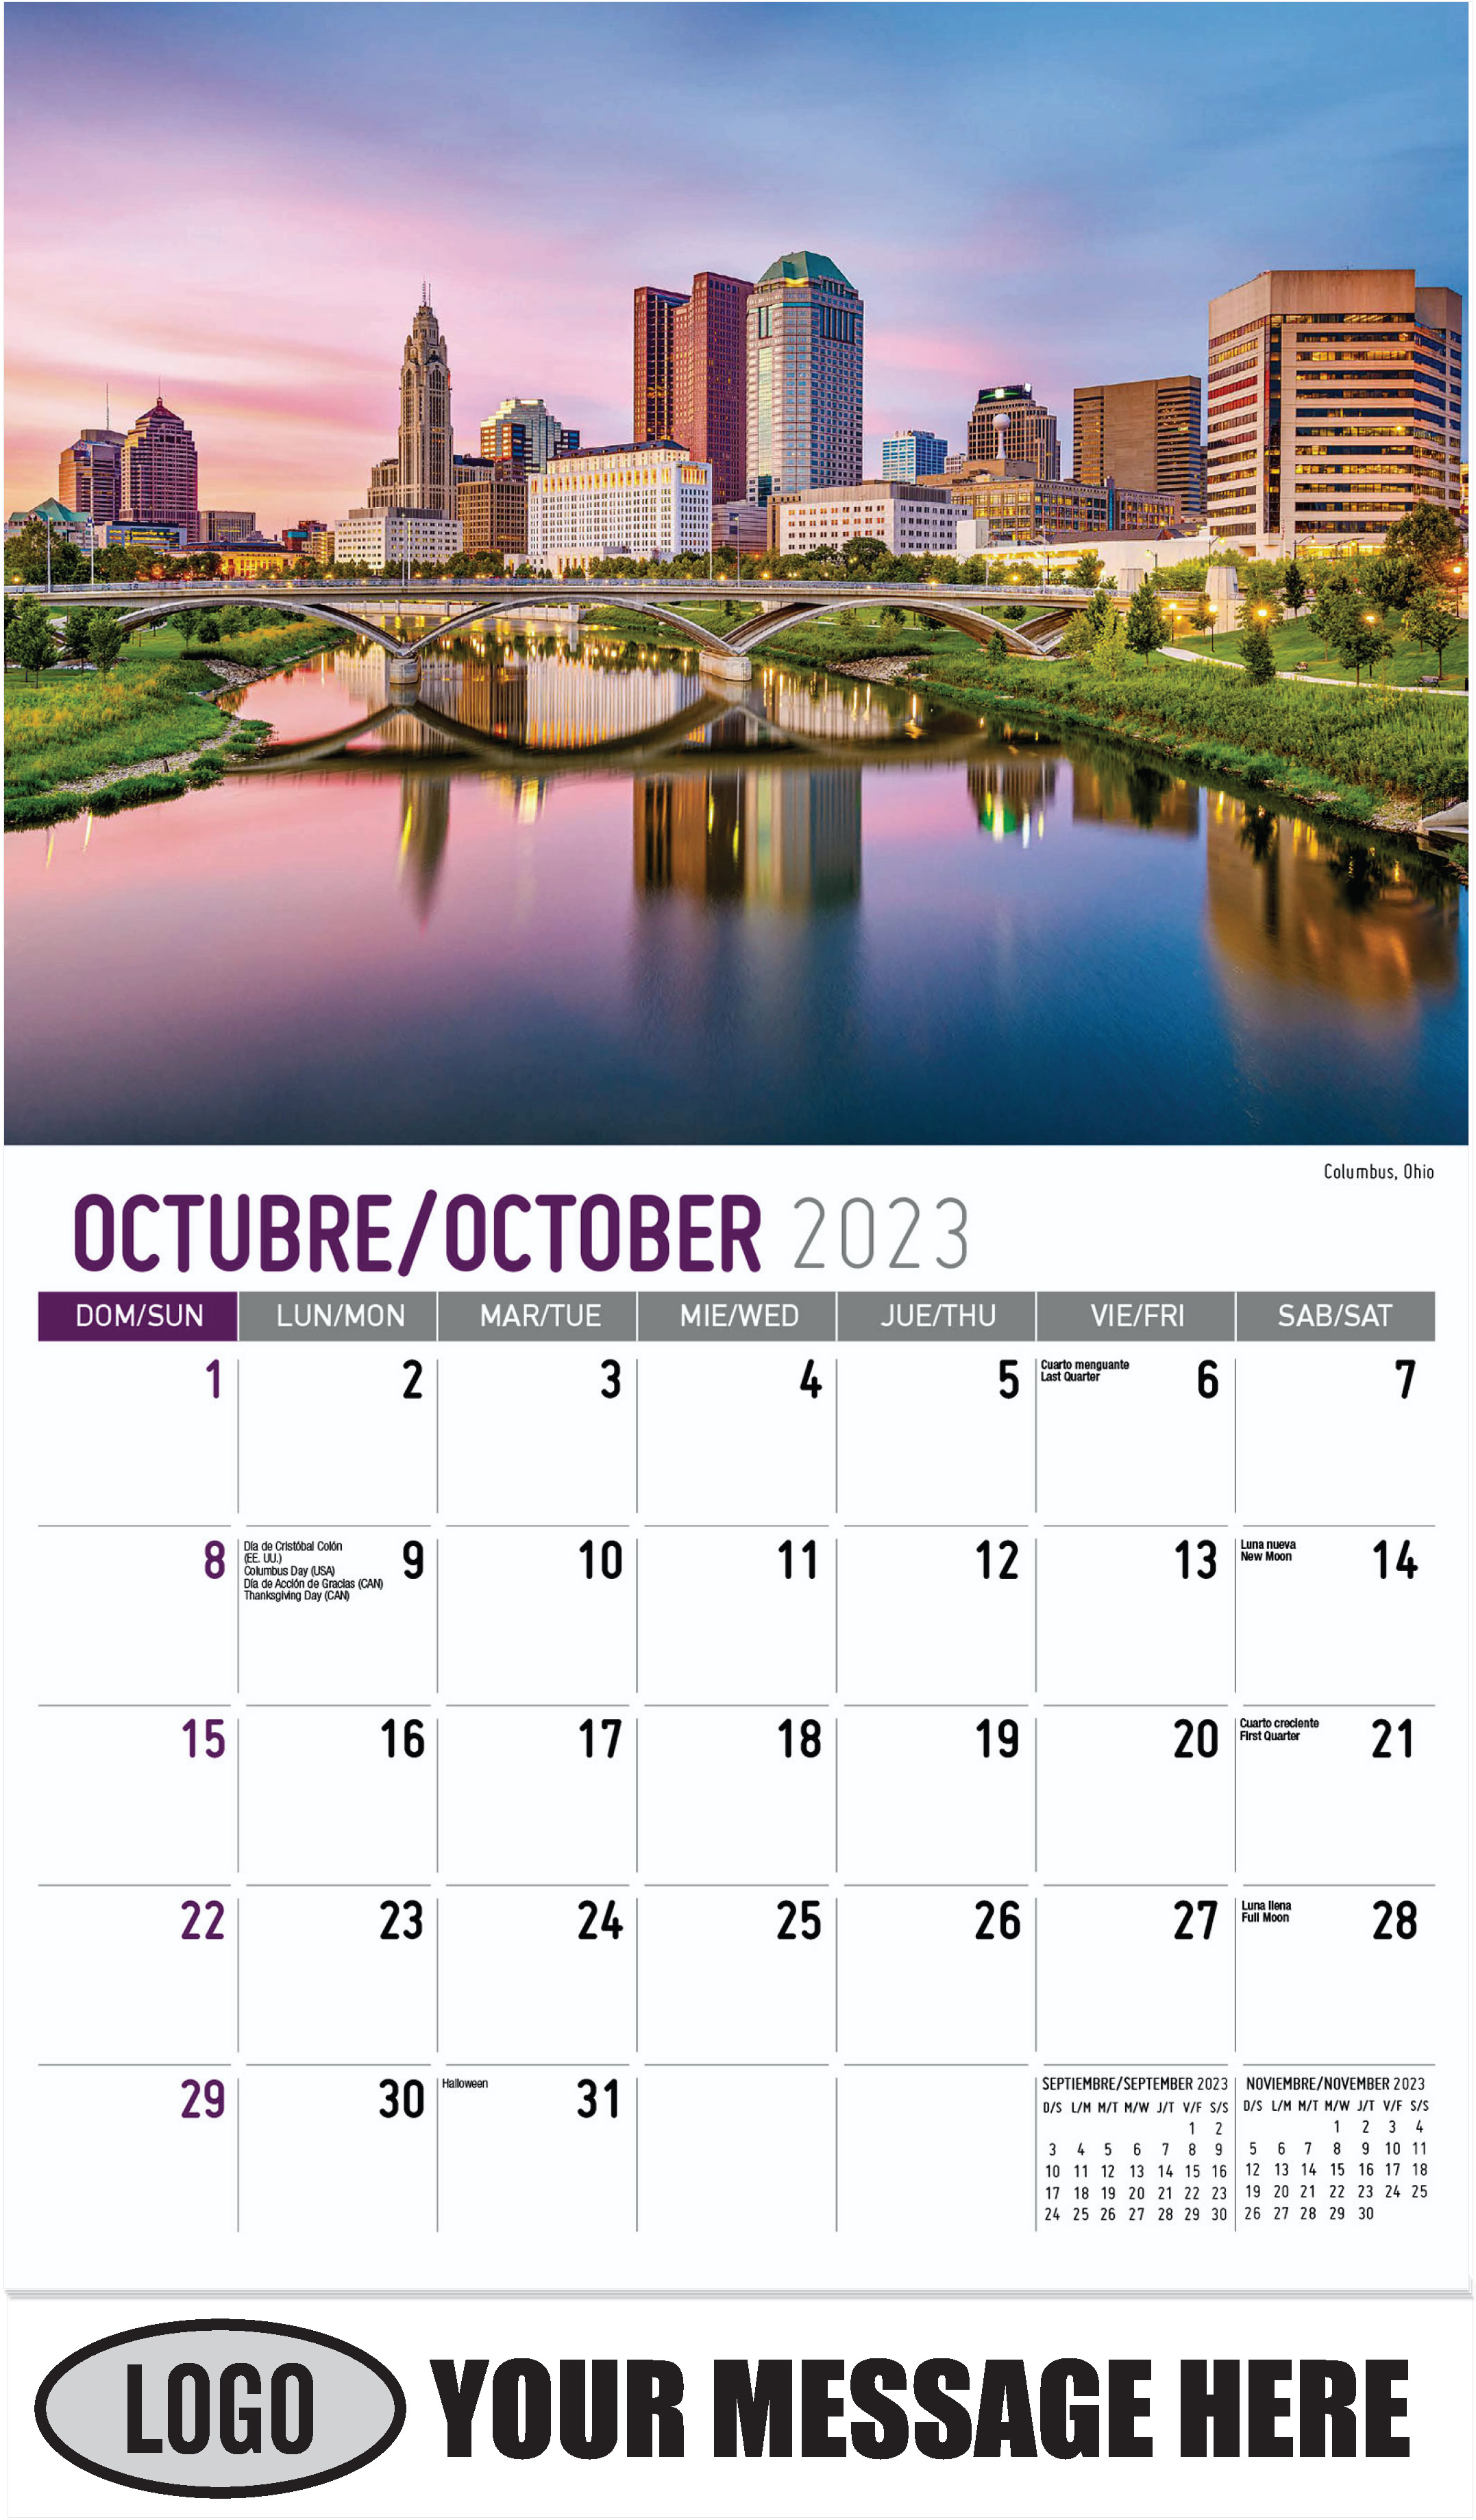 Columbus, Ohio - October - Scenes of America (Spanish-English bilingual) 2023 Promotional Calendar